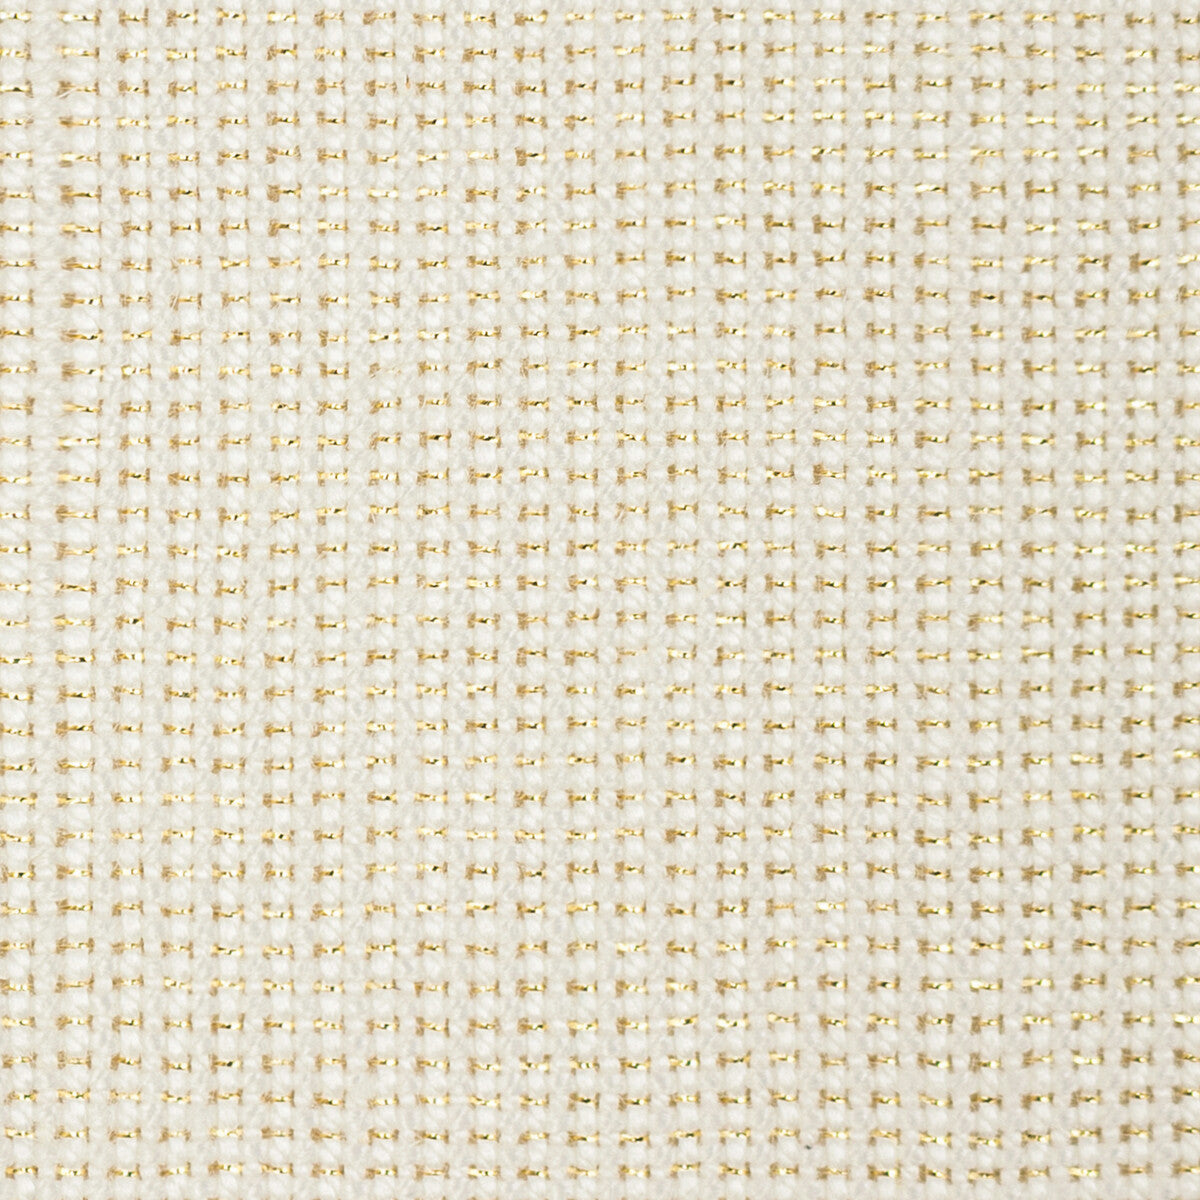 Kravet Basics fabric in 35785-1 color - pattern 35785.1.0 - by Kravet Basics